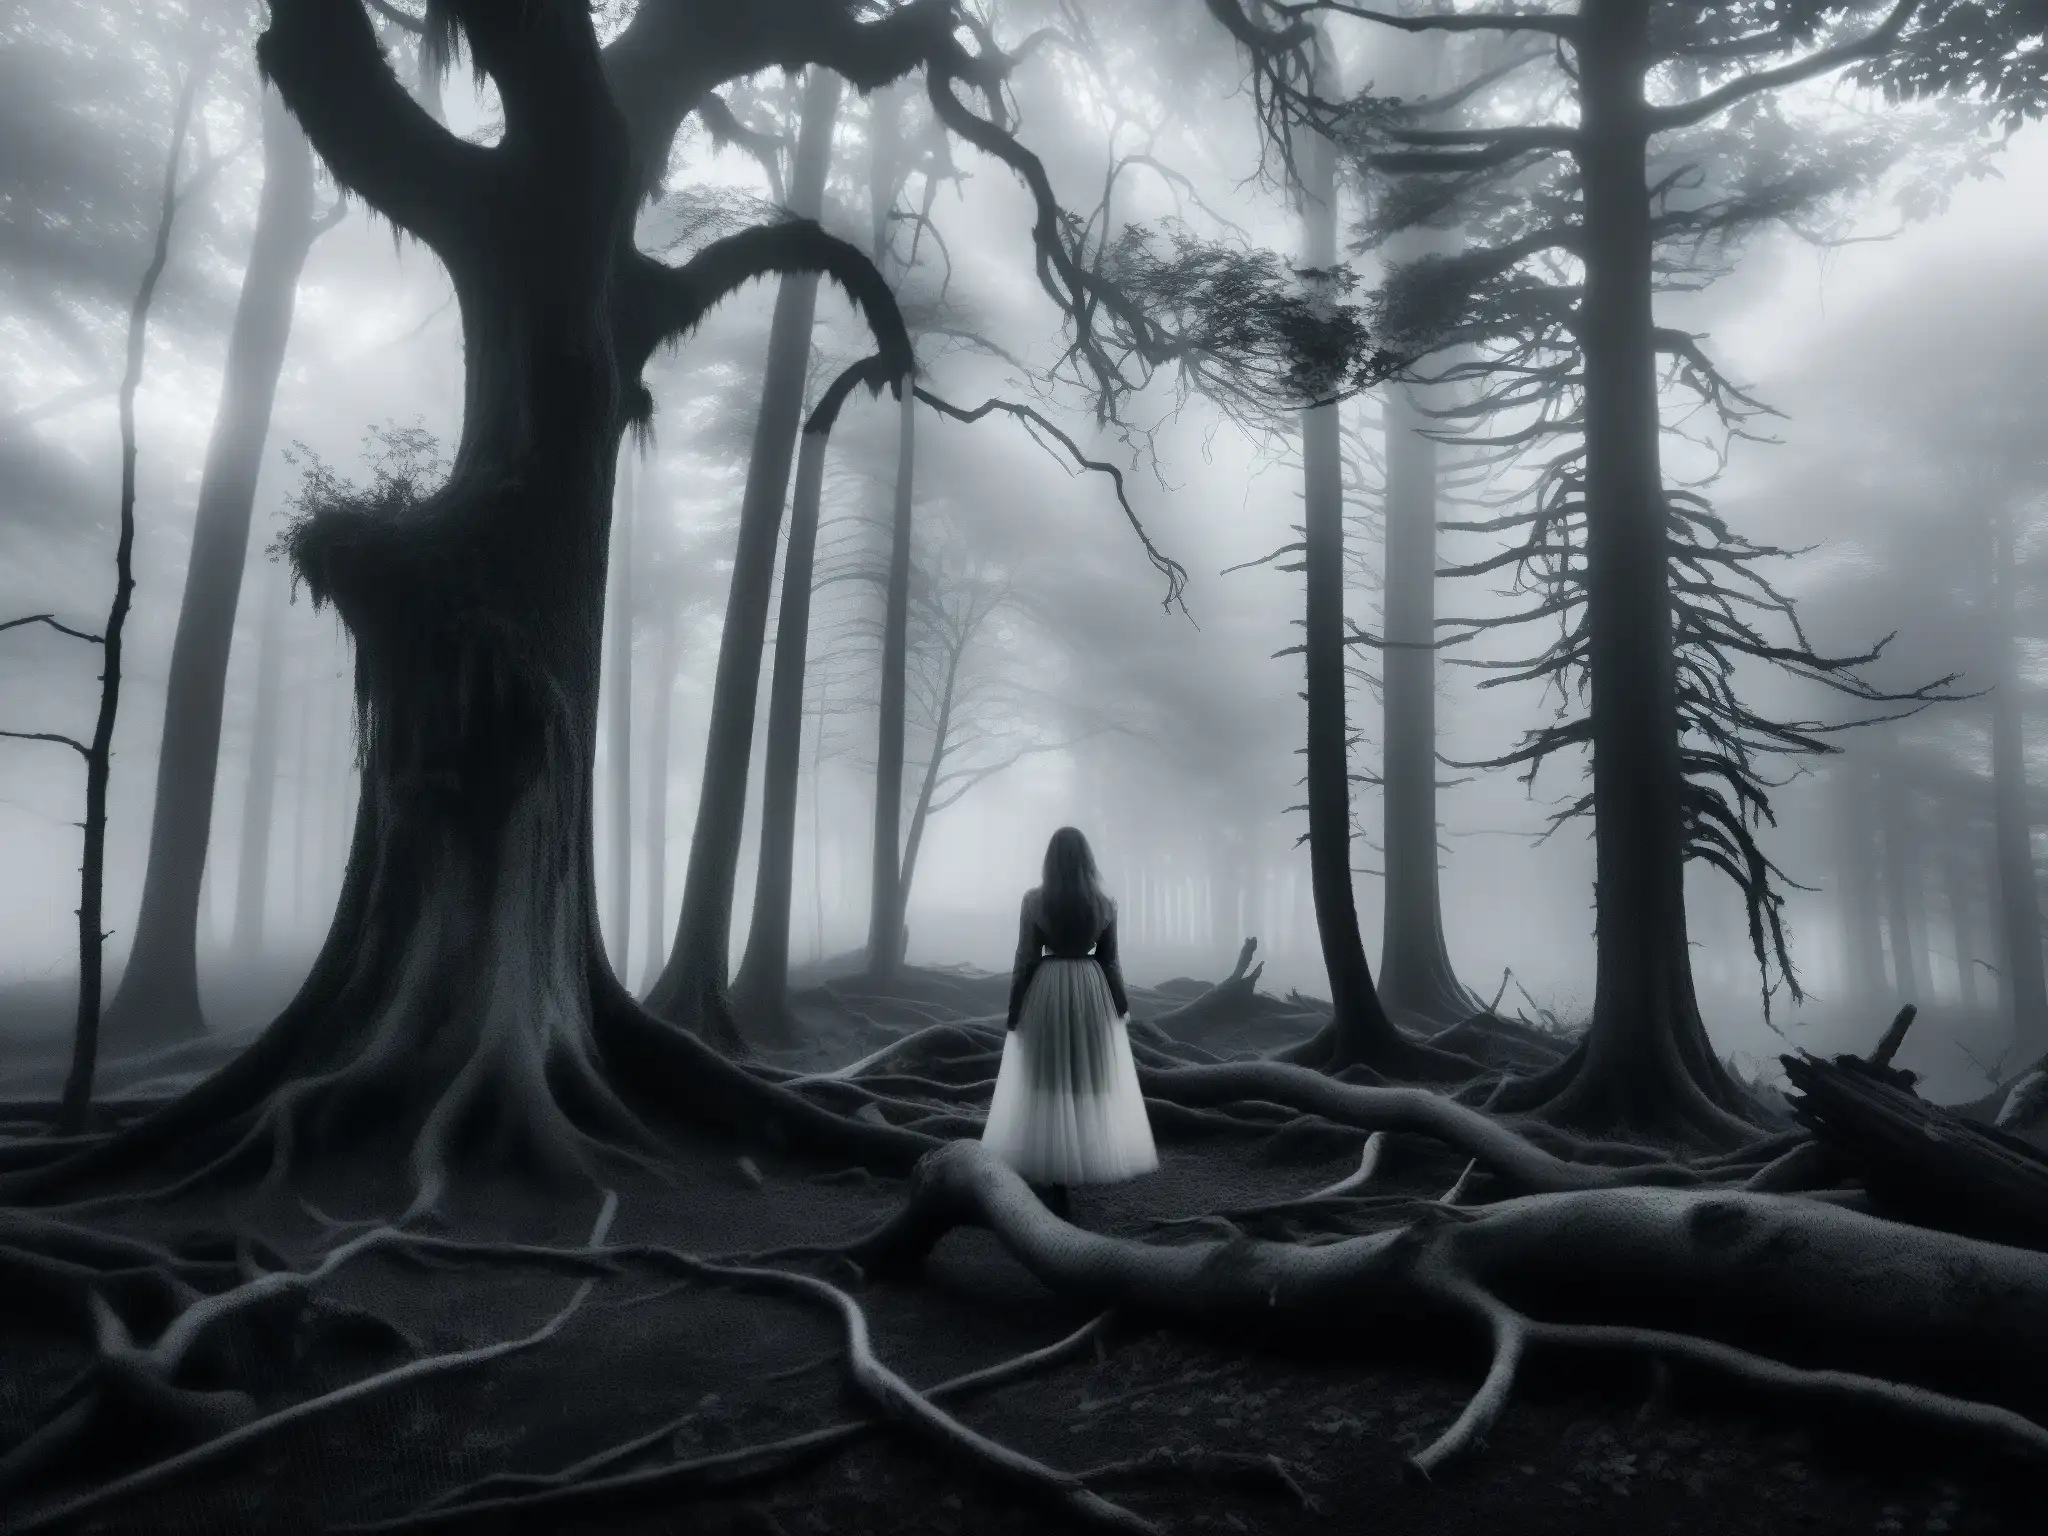 Una misteriosa figura en un bosque brumoso al anochecer, evocando la leyenda de La Sayona en la mitología venezolana